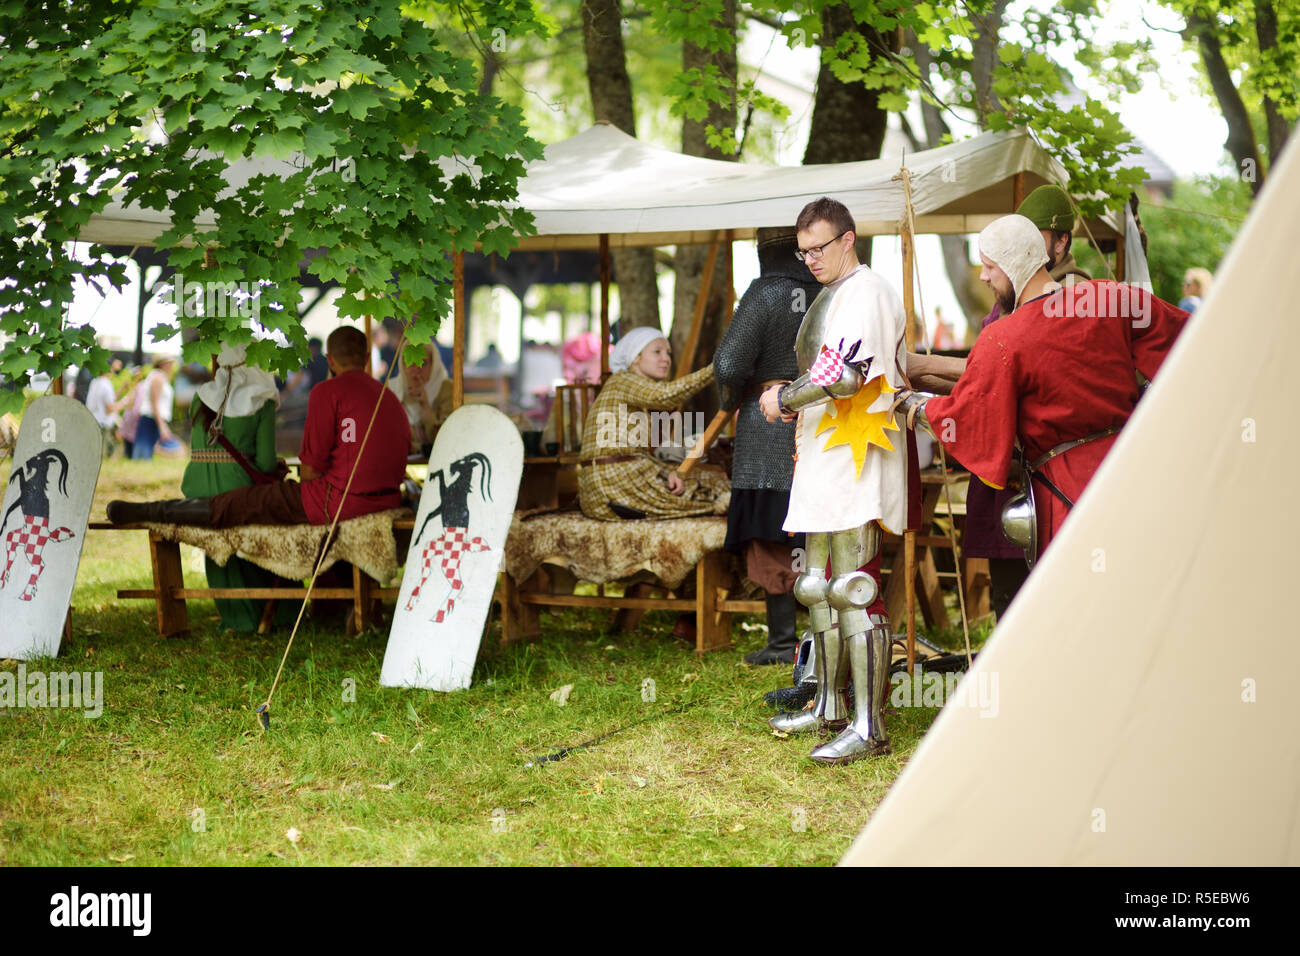 TRAKAI, Litauen - 16. JUNI 2018: Menschen tragen Ritter Kostüme während historische Reenactment Kampf auf jährliche Mittelalter Festival, in Trakai Peni gehalten Stockfoto